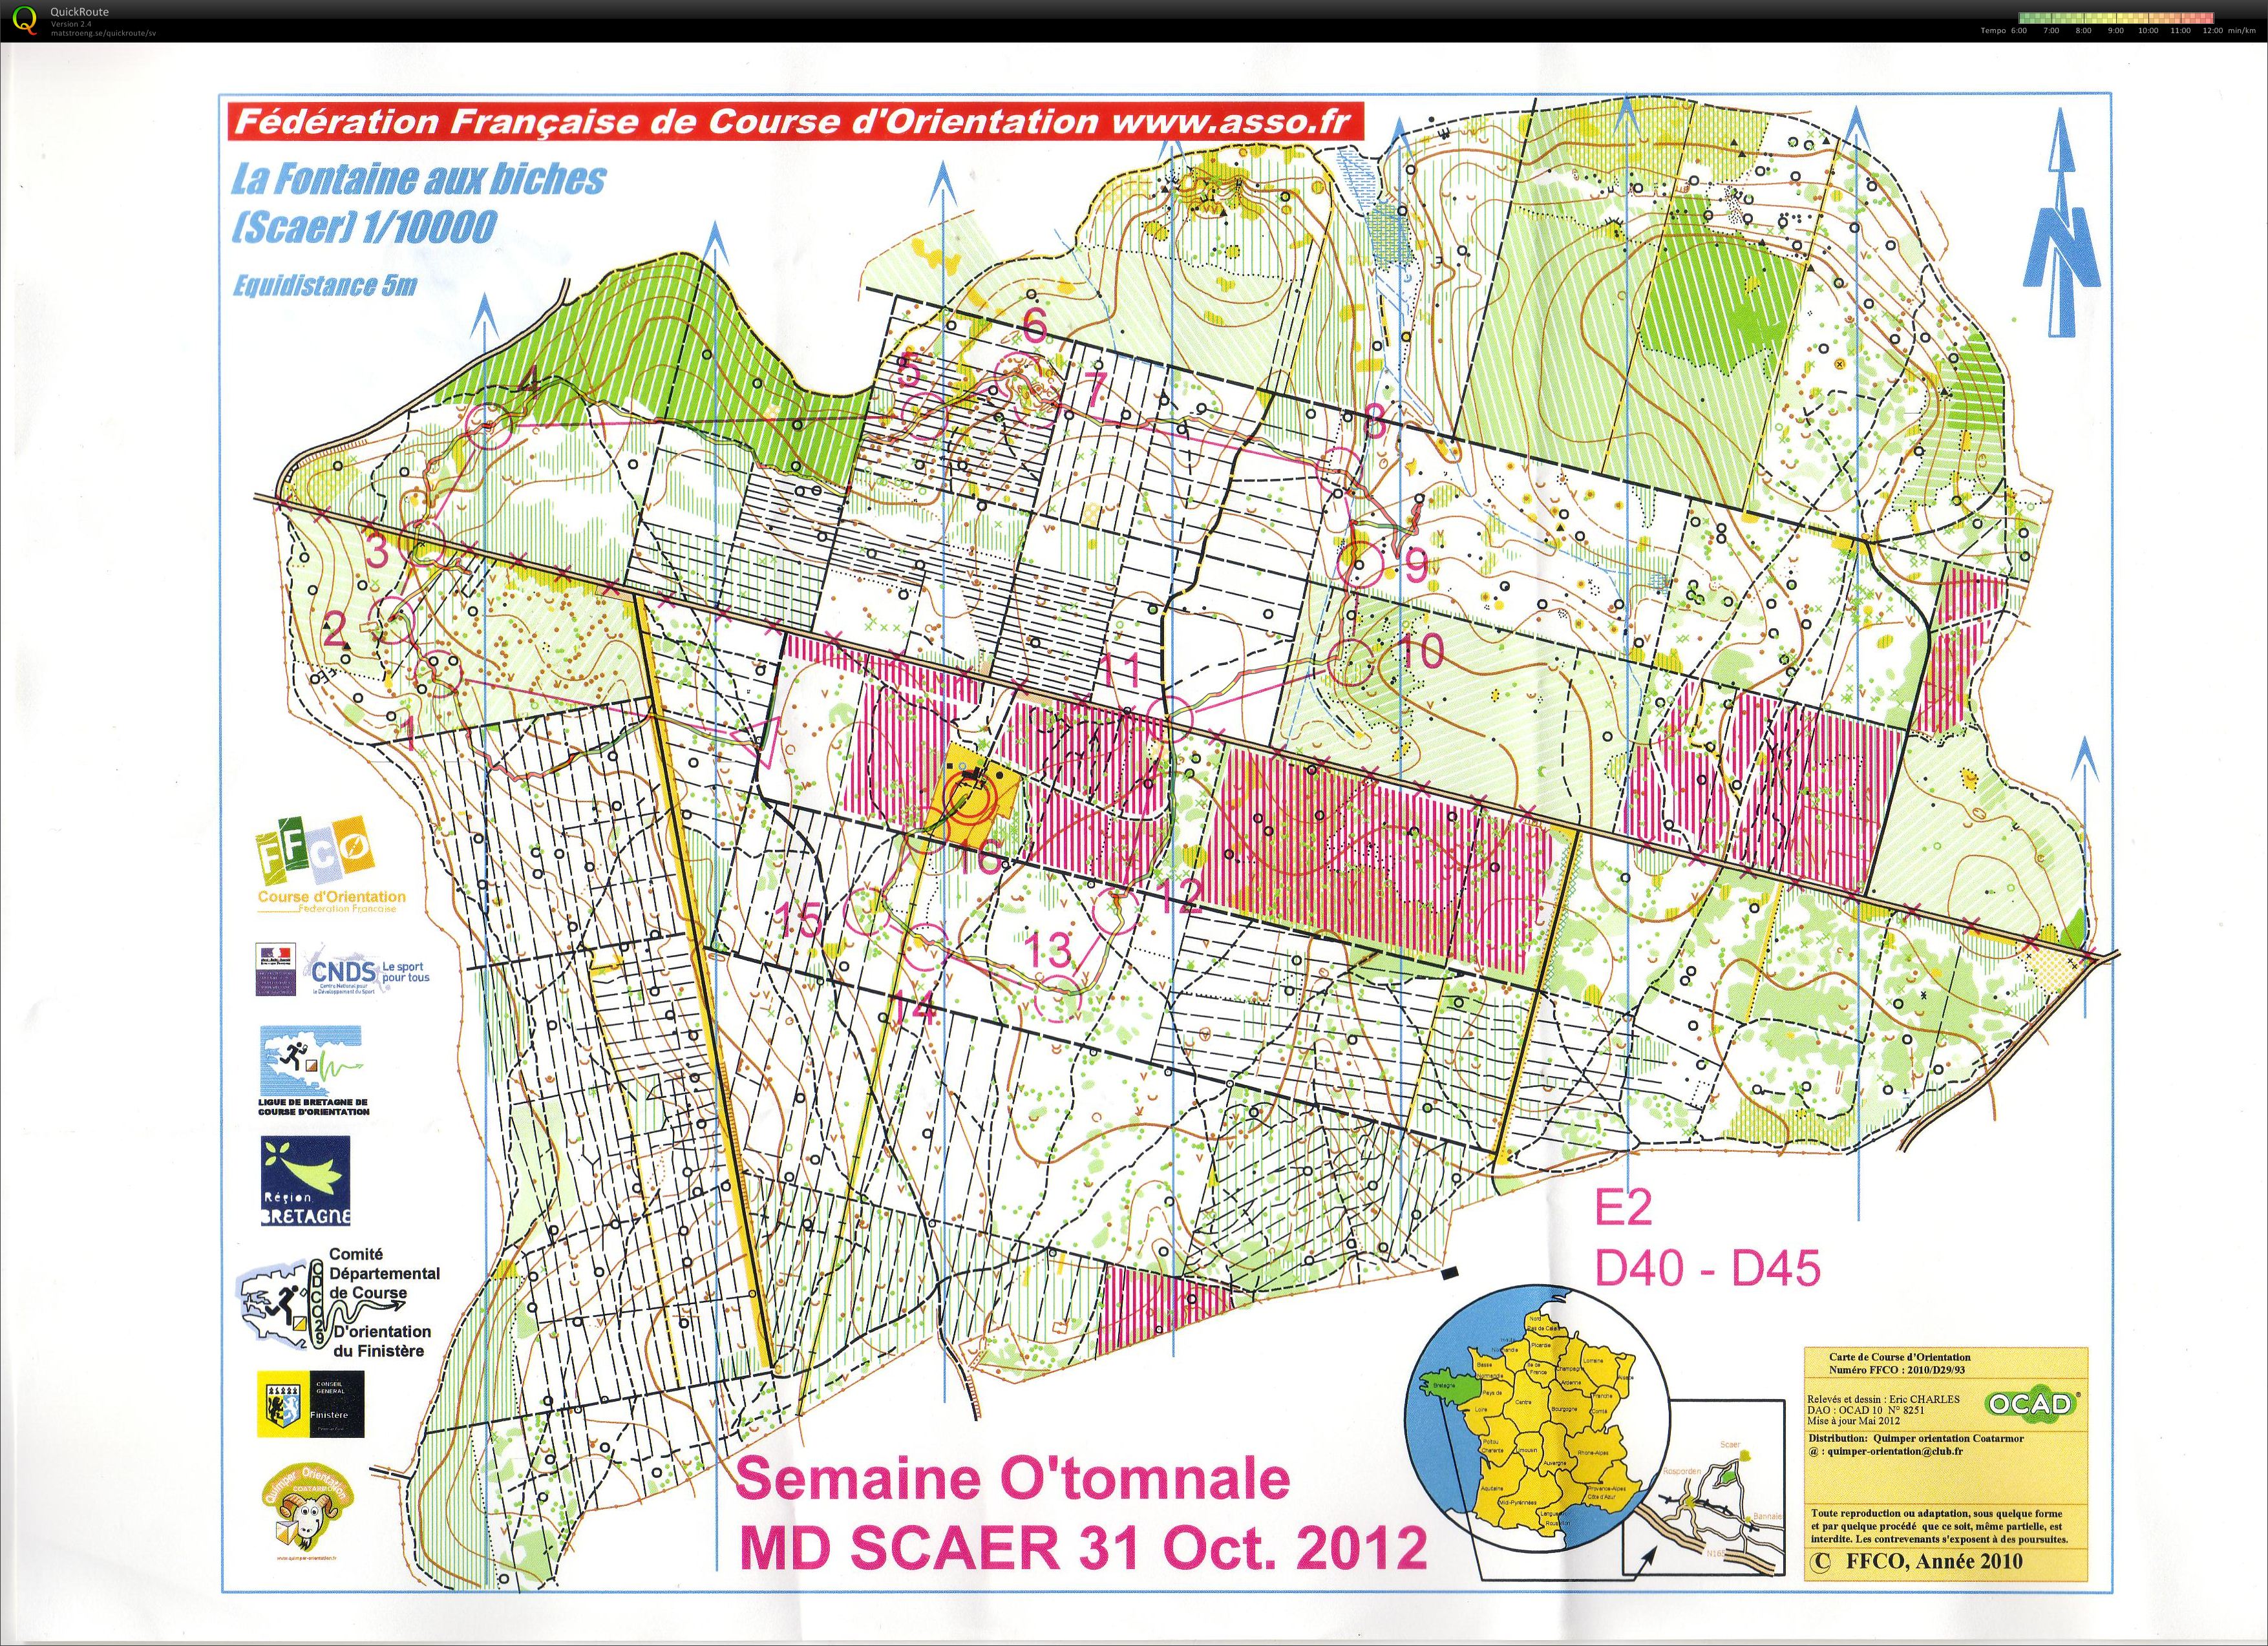 Semaine O'tomnale - E2 (31/10/2012)